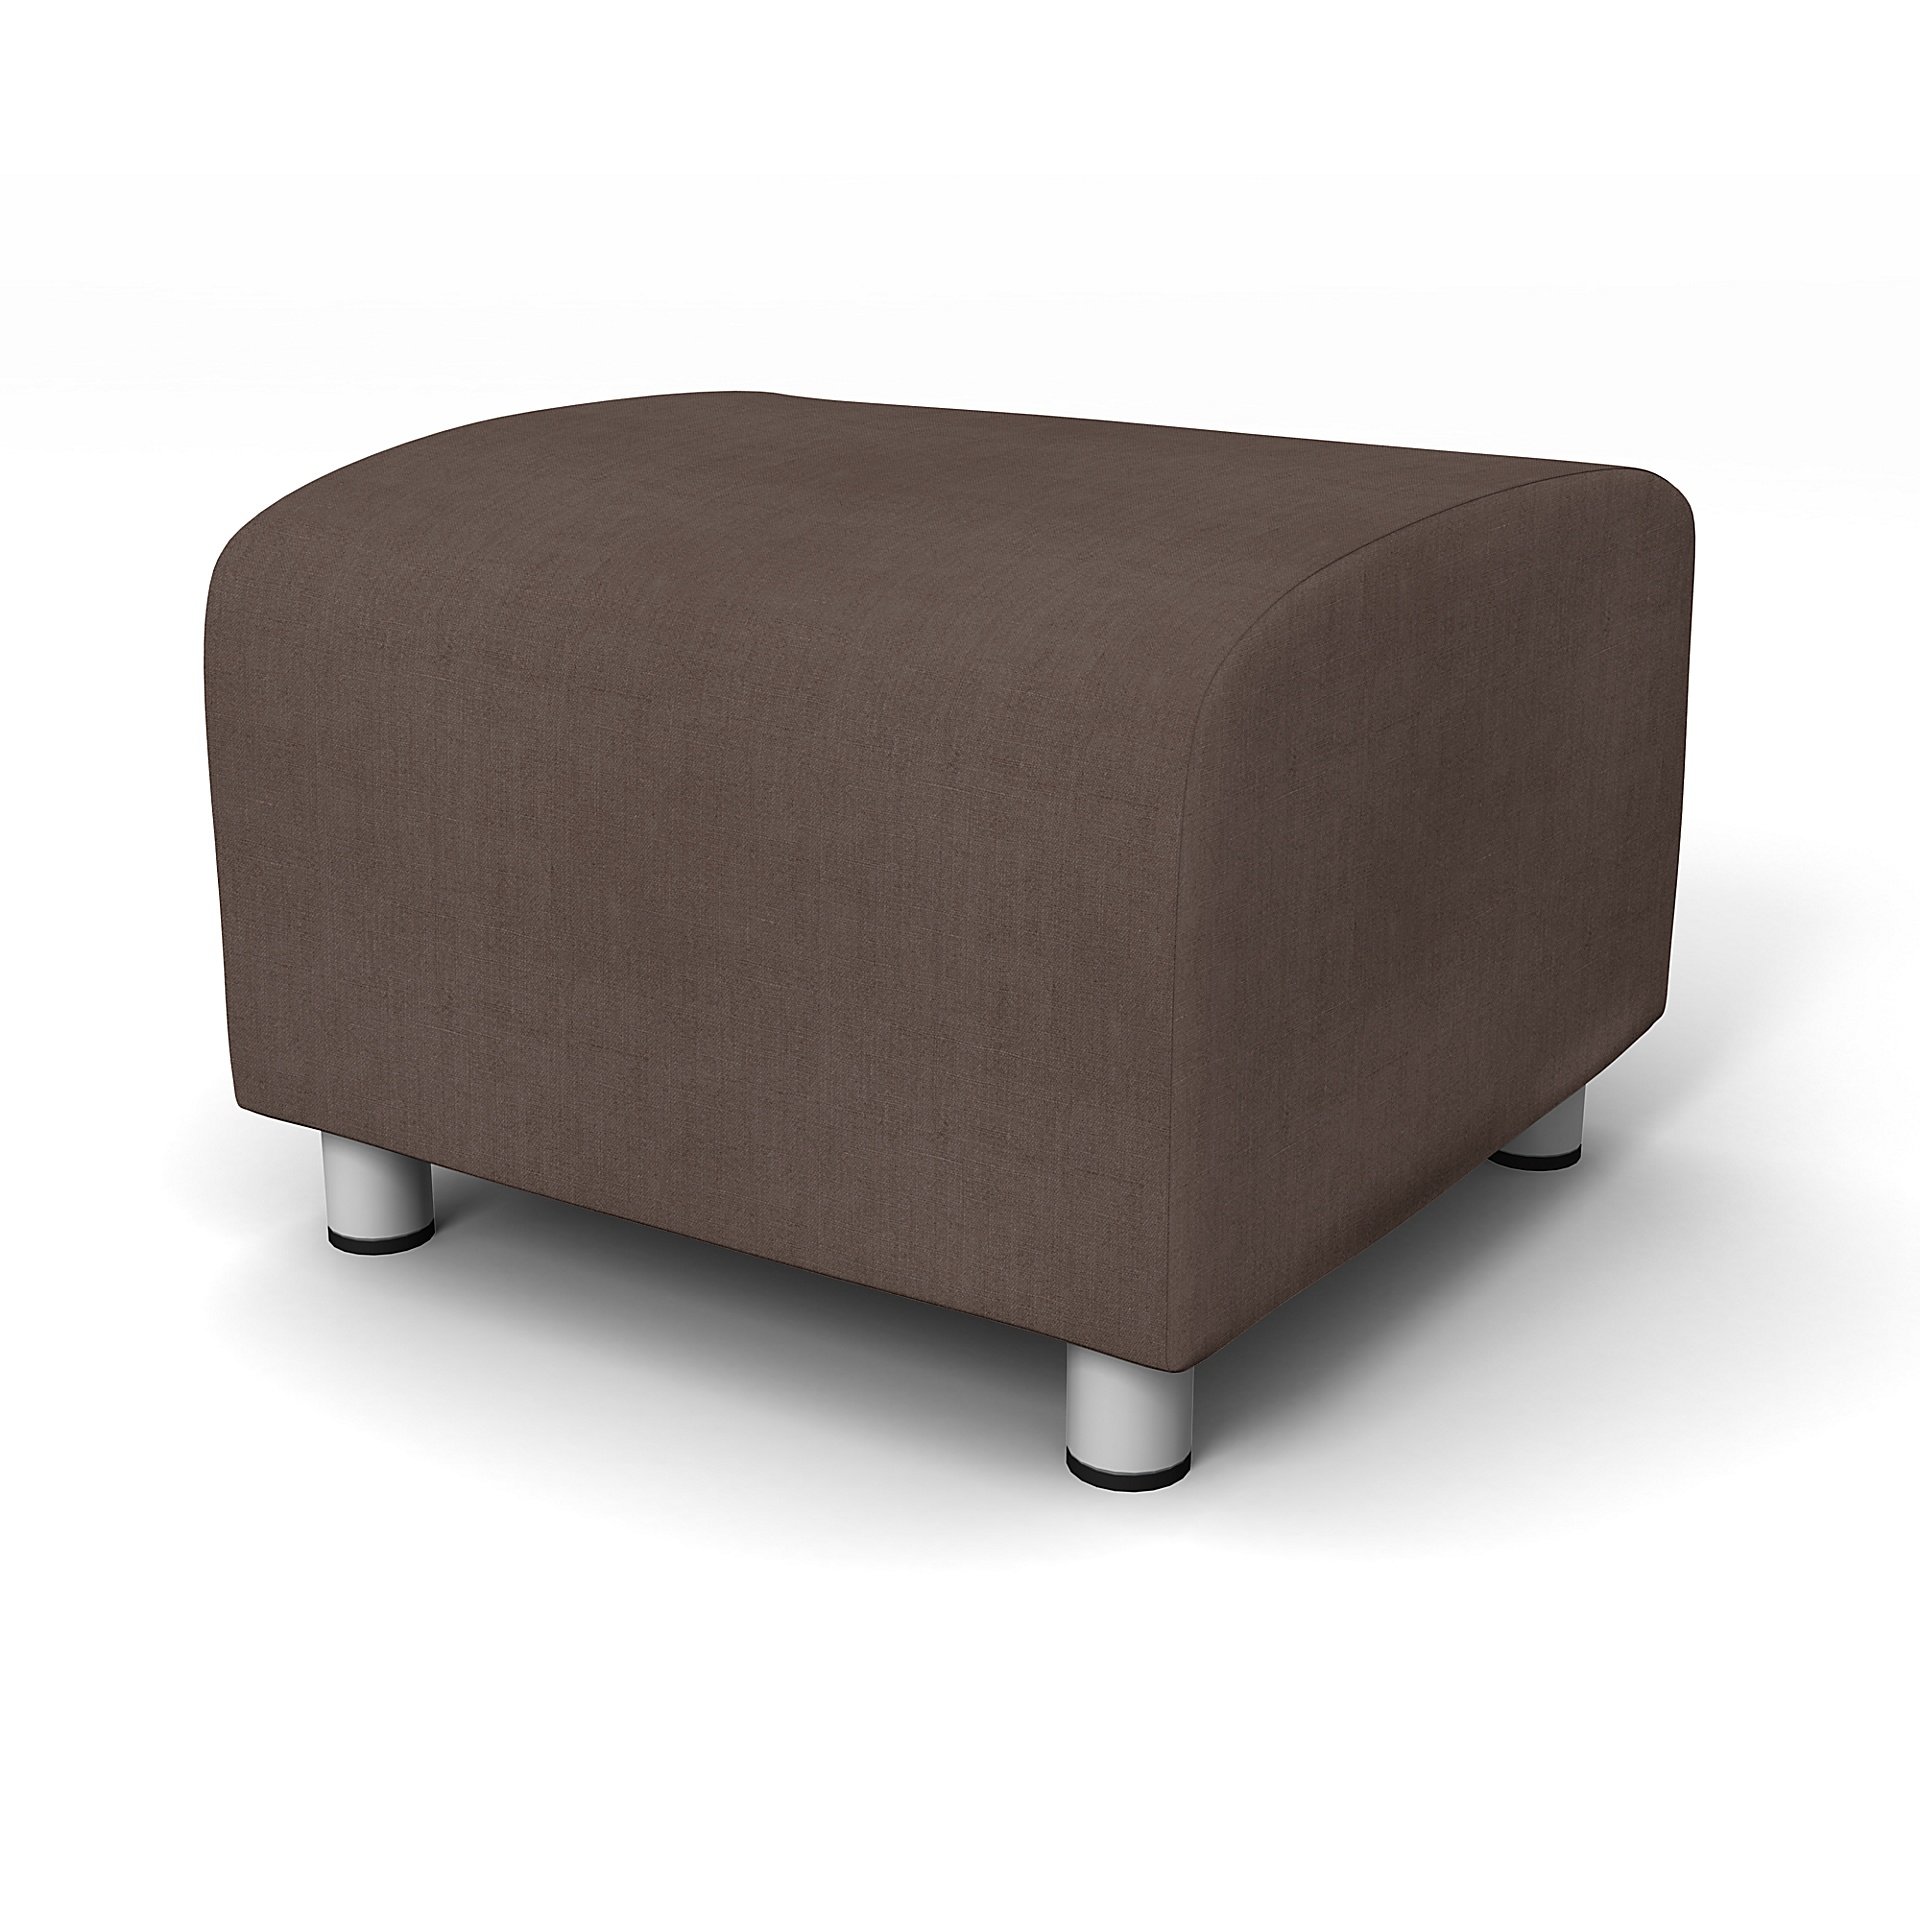 IKEA - Klippan Footstool Cover, Cocoa, Linen - Bemz